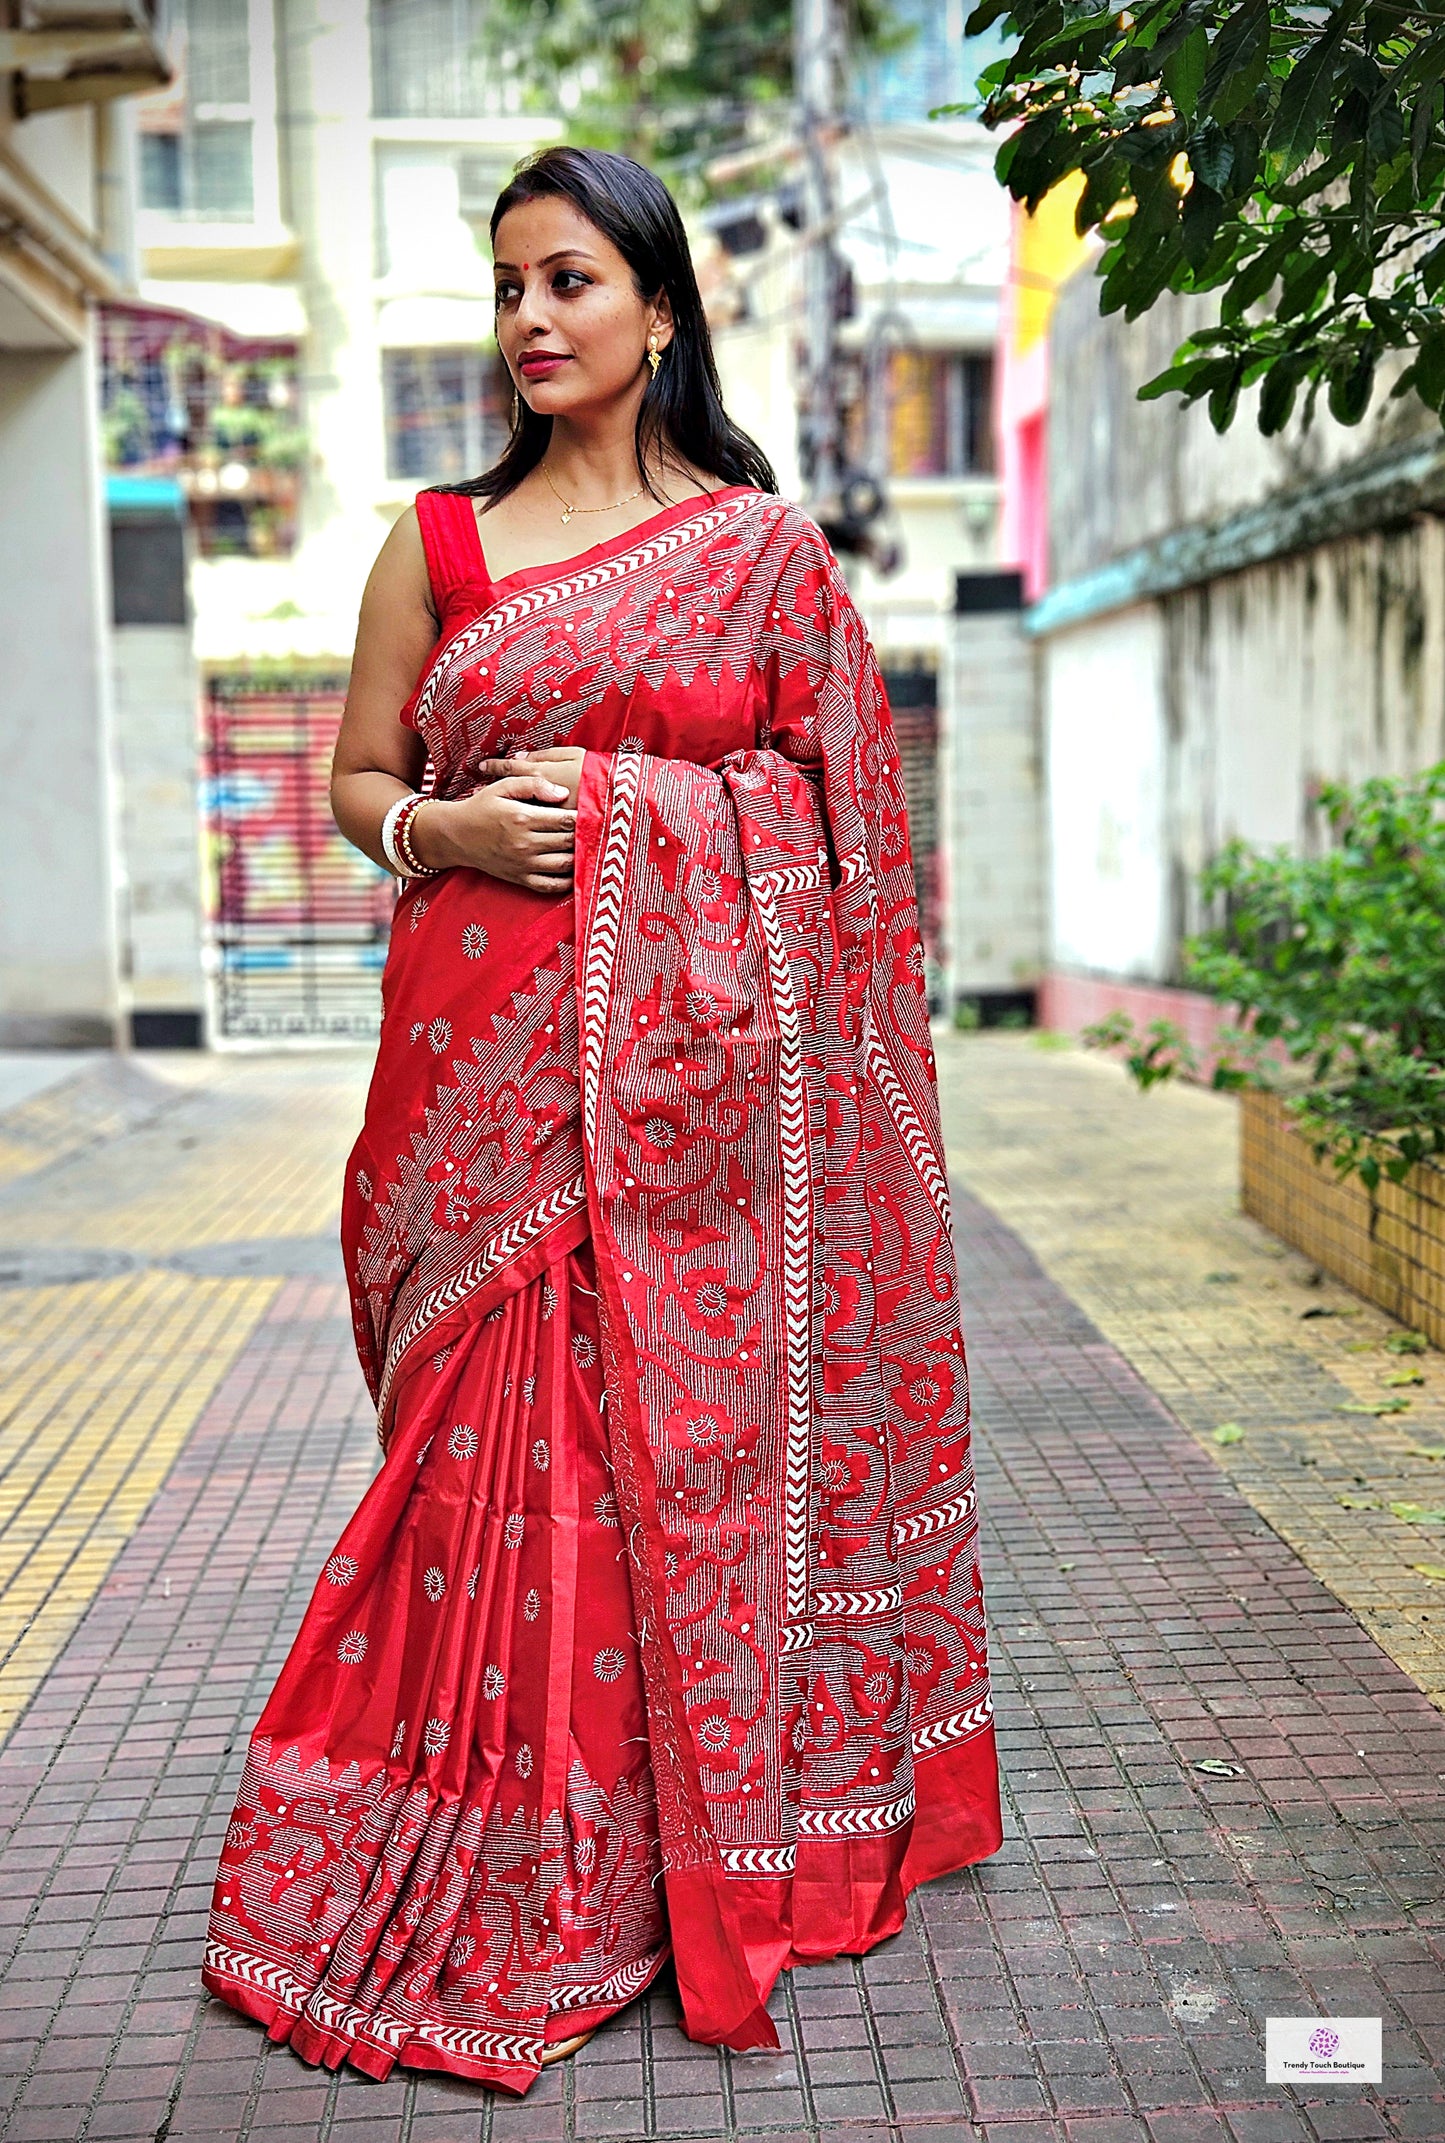 Red kantha stitch saree online reverse kantha work art silk bangalore silk saree best price office wear saree wedding saree gift